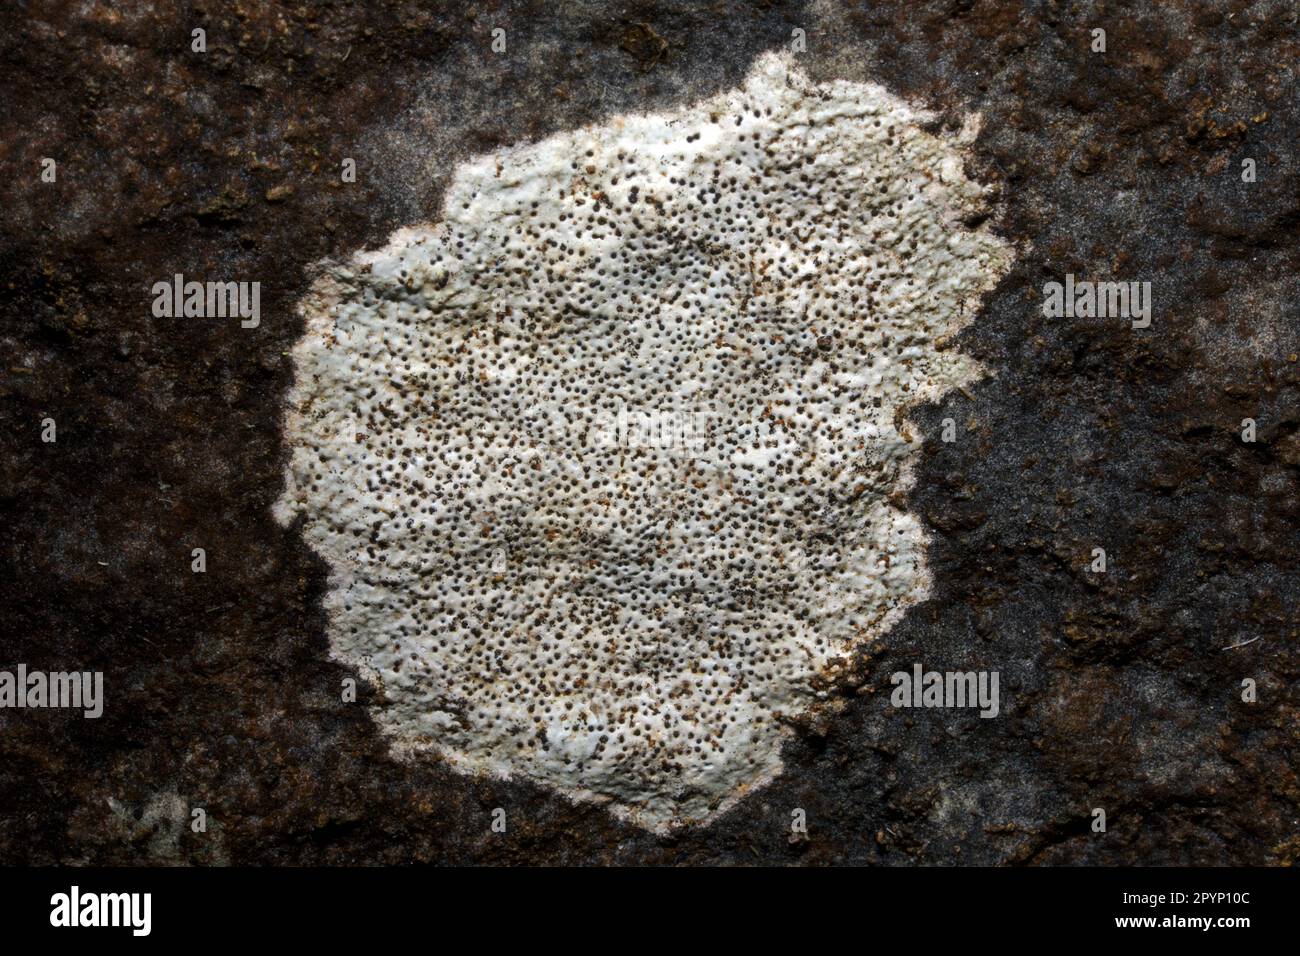 Bagliettoa calciseda è un lichene crostacei che si trova su rocce calcaree ben illuminate e esposte. Sembra avere una distribuzione globale. Foto Stock